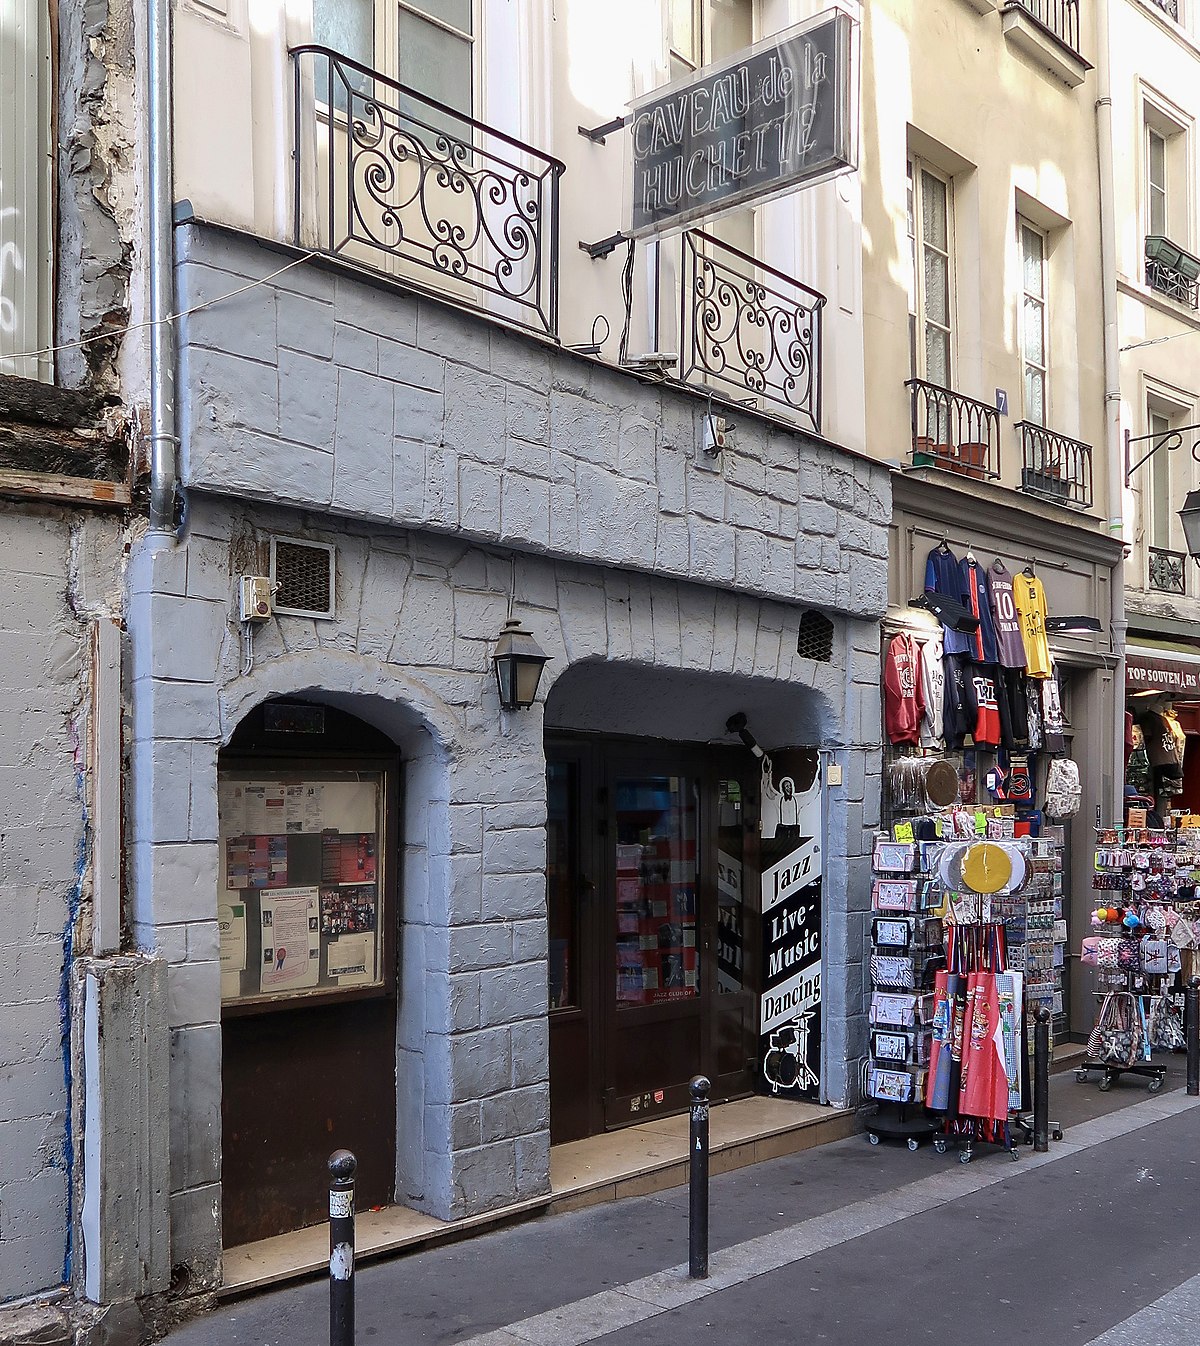 Rue de la Huchette - Wikipedia